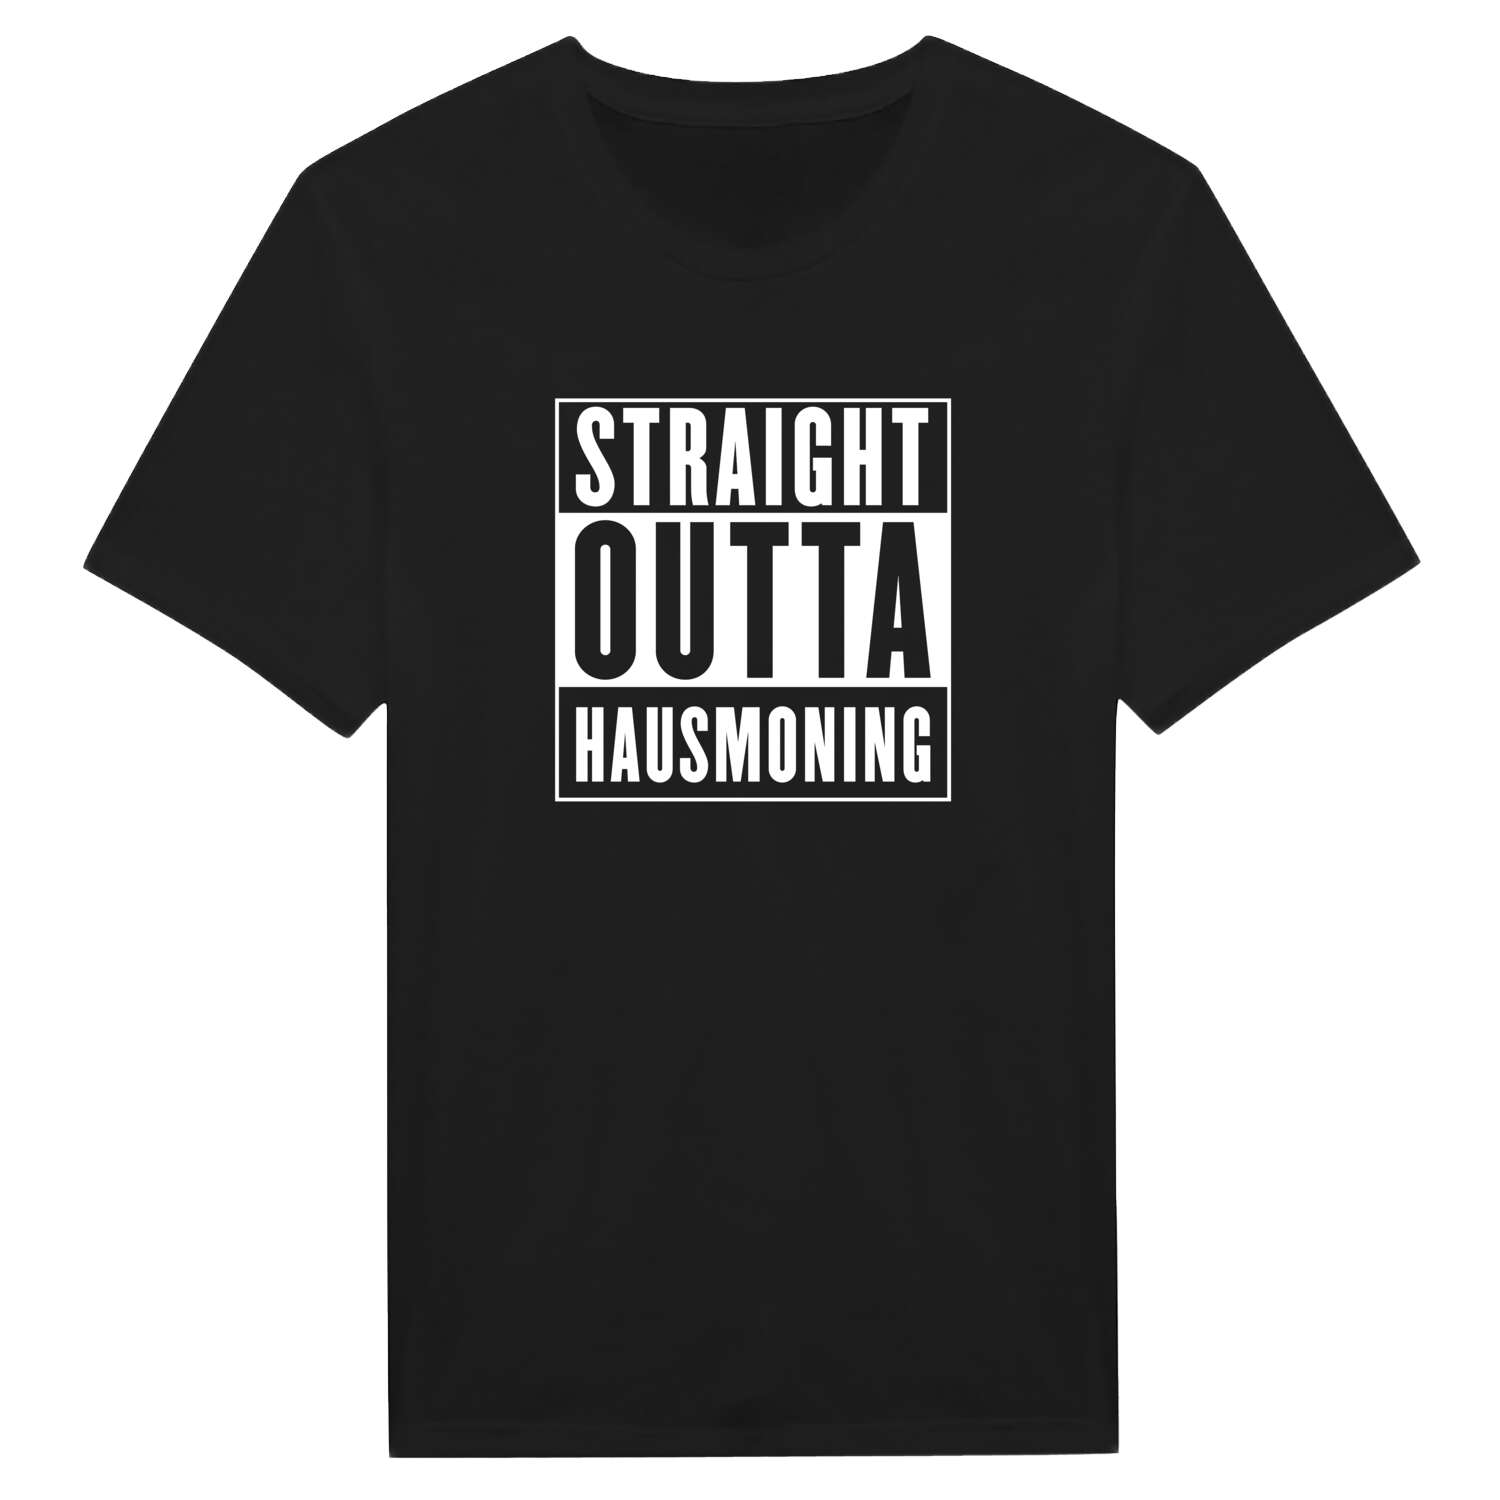 Hausmoning T-Shirt »Straight Outta«